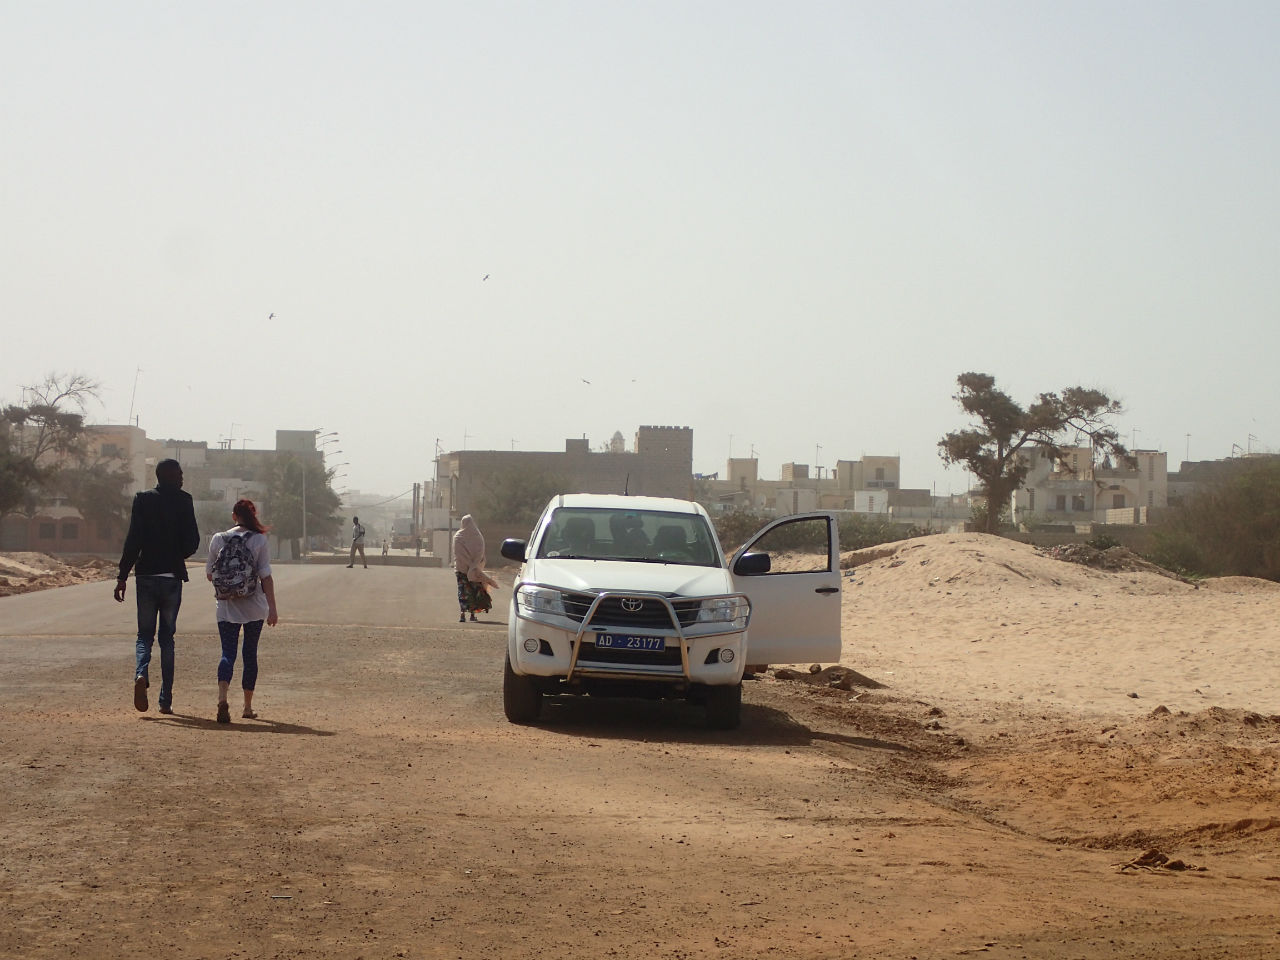 Город в песке Дакар. Лица Африки Дакар, Сенегал